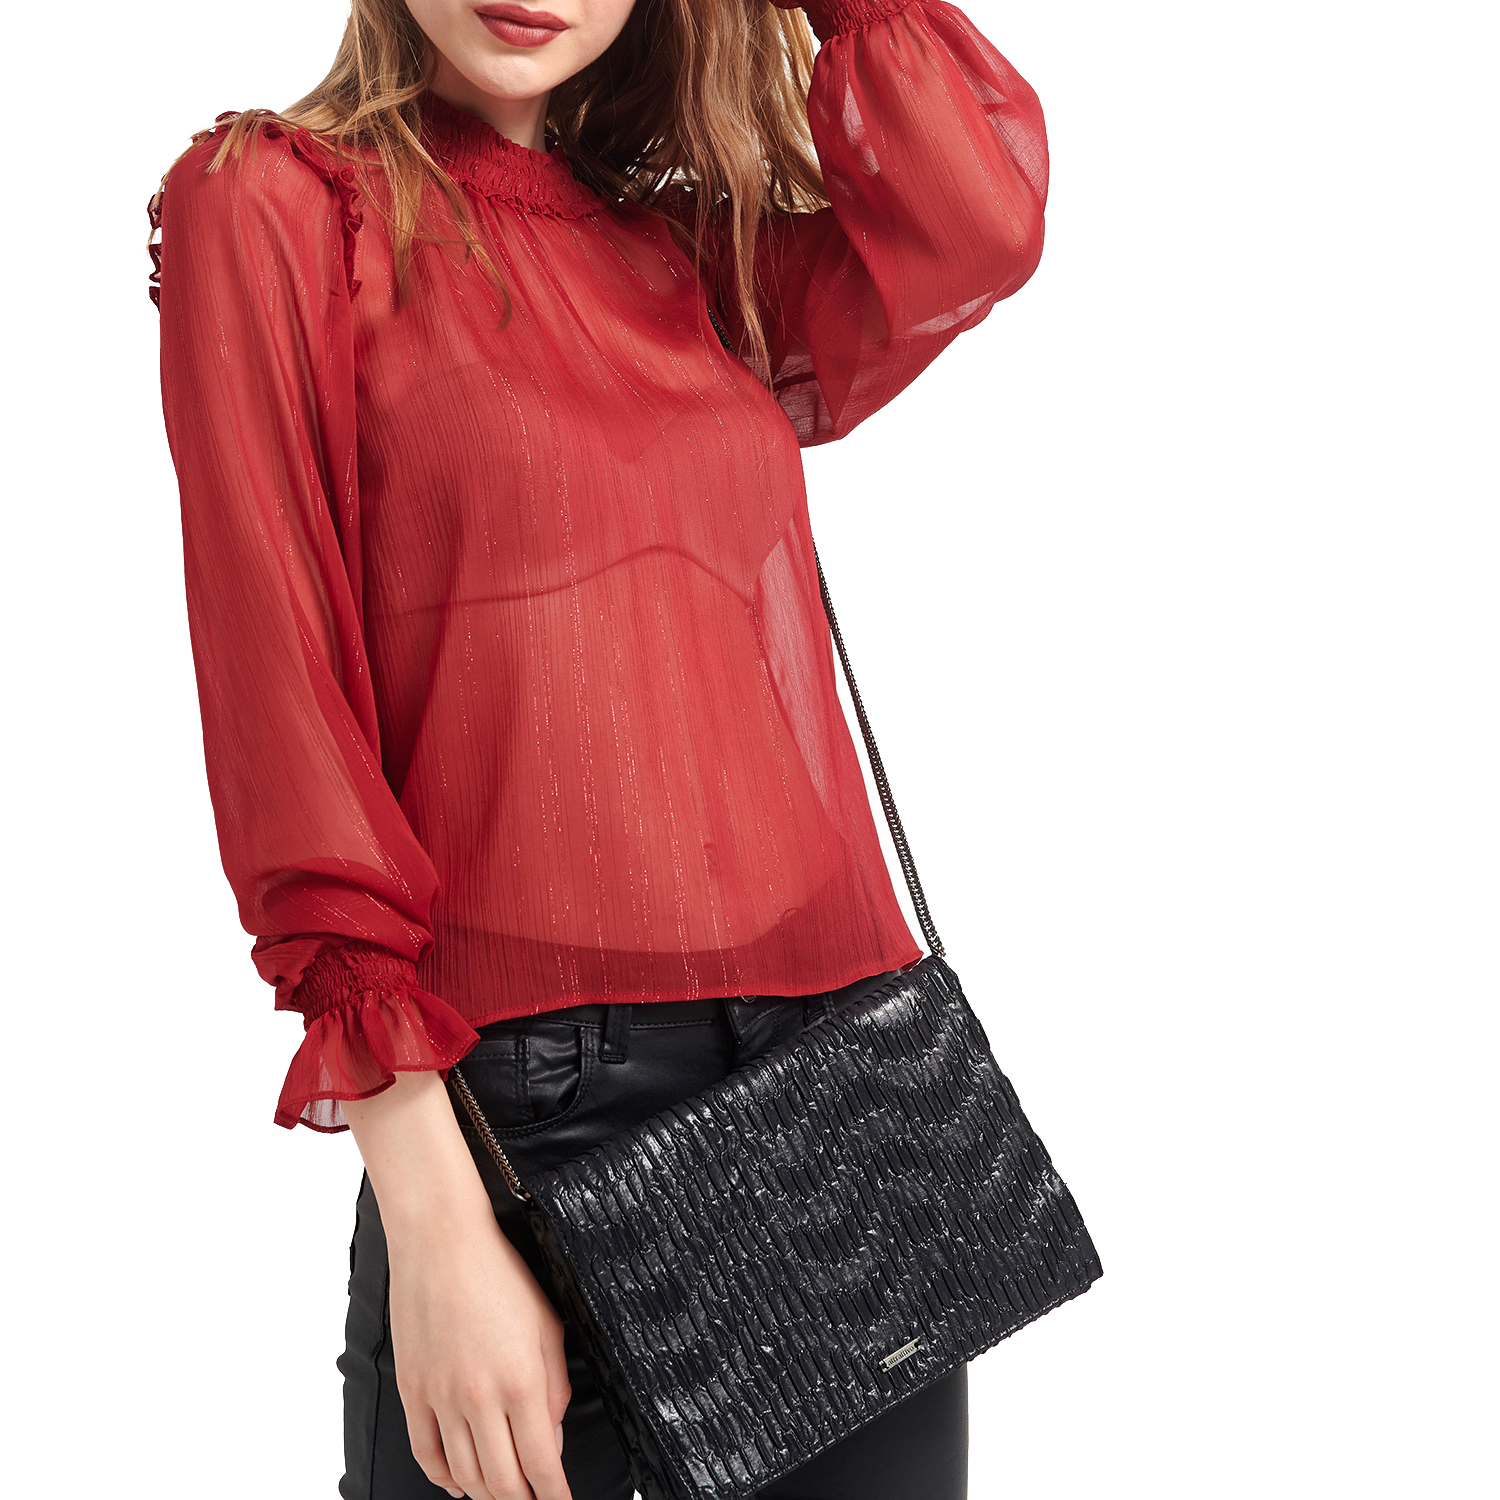 Γυναικεία/Ρούχα/Μπλούζες/Μακρυμάνικες ATTRATTIVO - Γυναικεία μπλούζα ATTRATTIVO κόκκινη